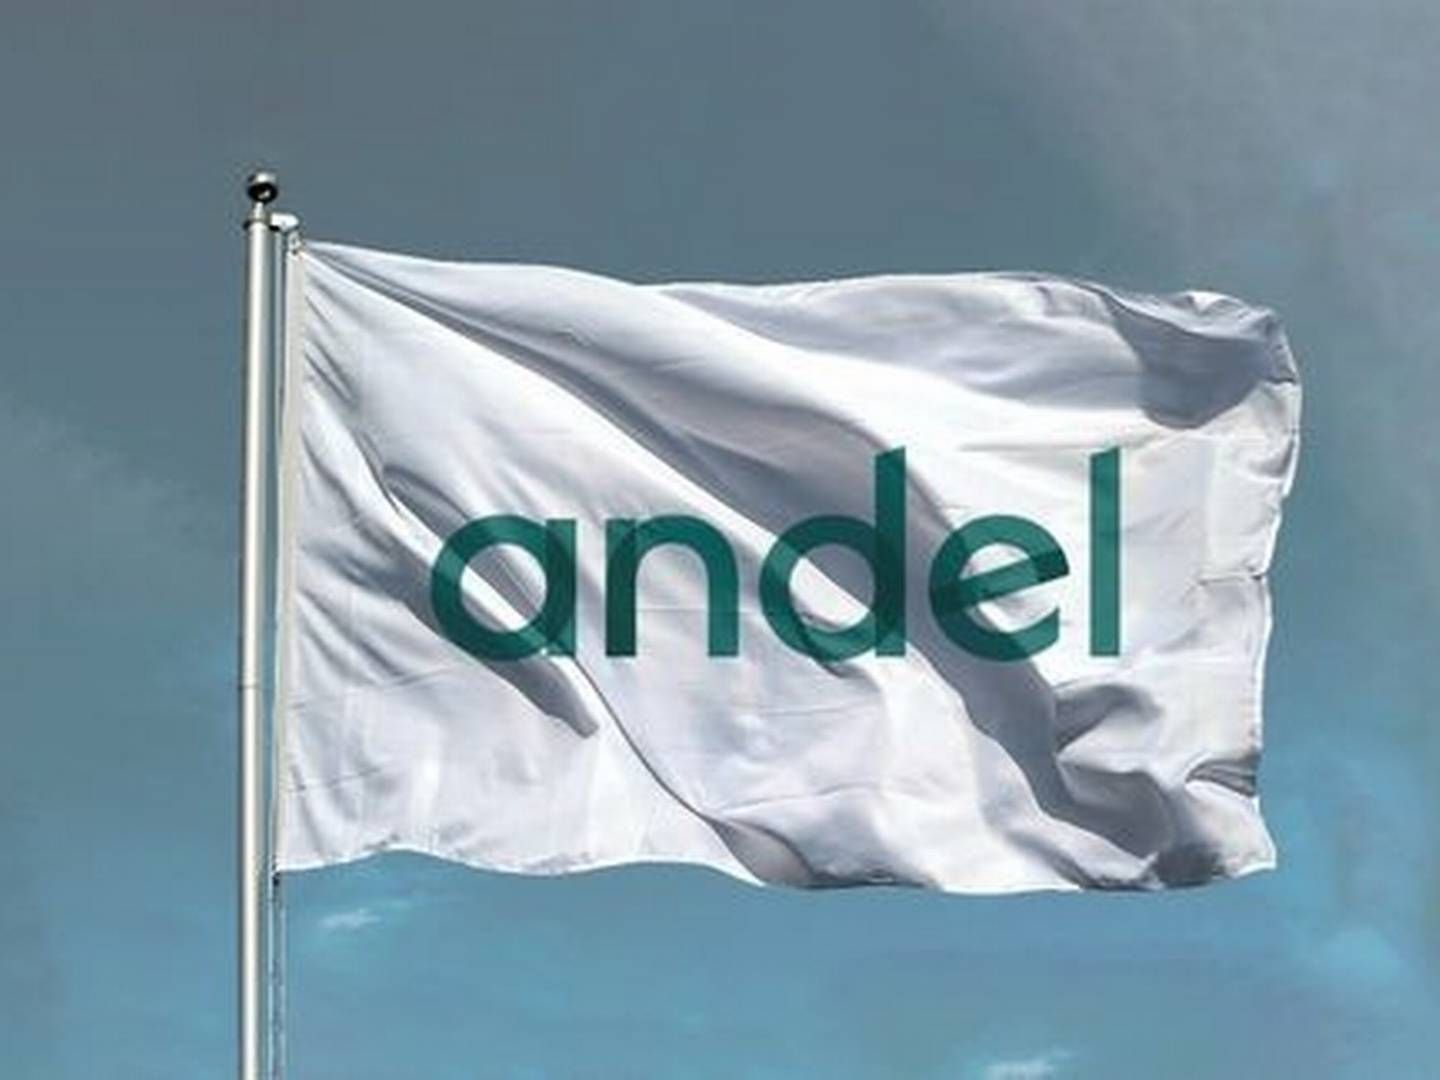 Andel er Danmarks største energikoncern, efter at det andelsejede selskab i 2019 købte Radius Elnet af Ørsted for 21 mia. kr. De 1,1 mio. Radius-kunder er ikke blevet andelshavere i Andel. | Foto: Pr Andel/ Seas Nve